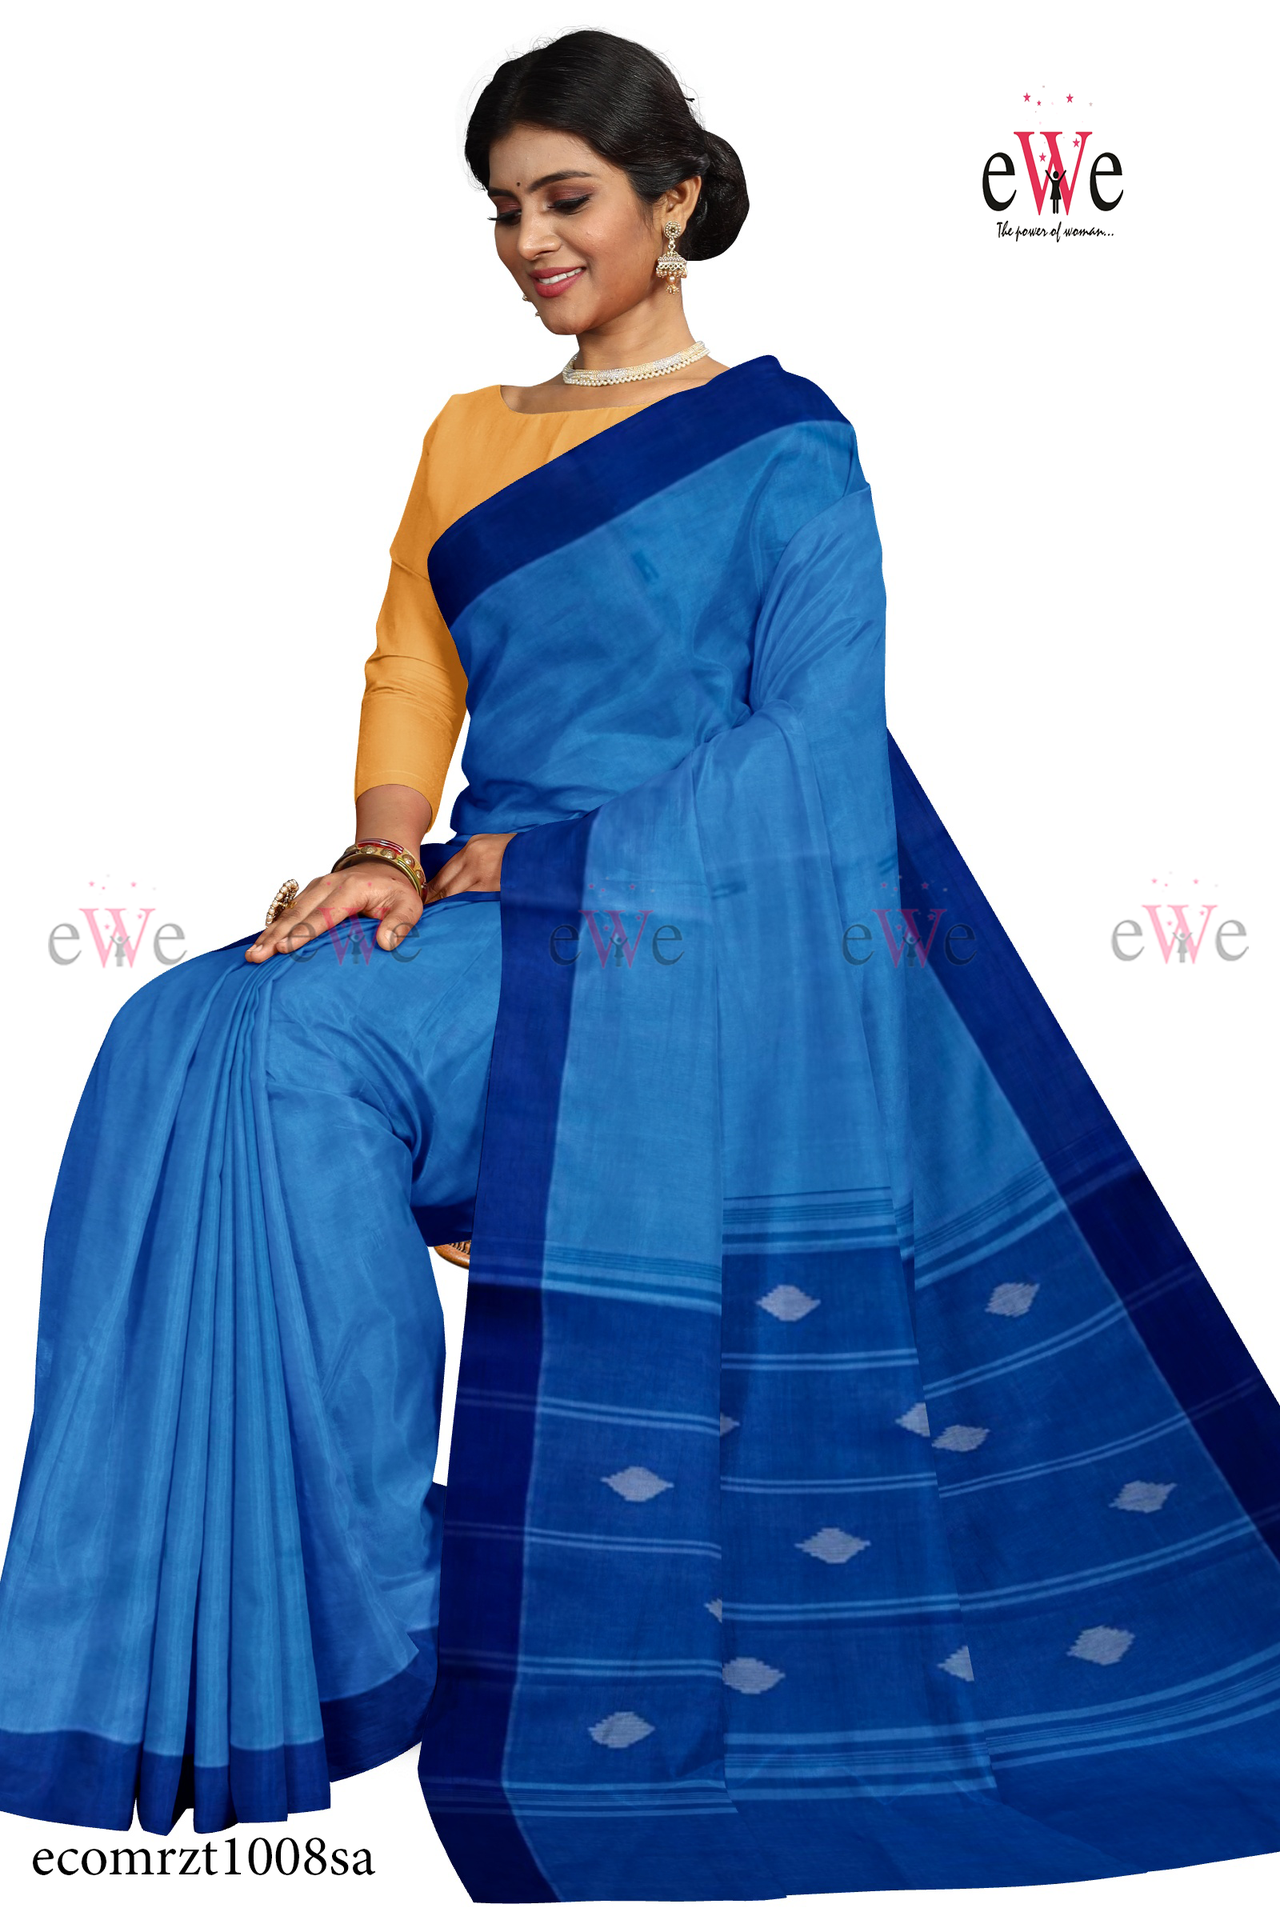 Neon blue Handspun Handwoven Handloom saree